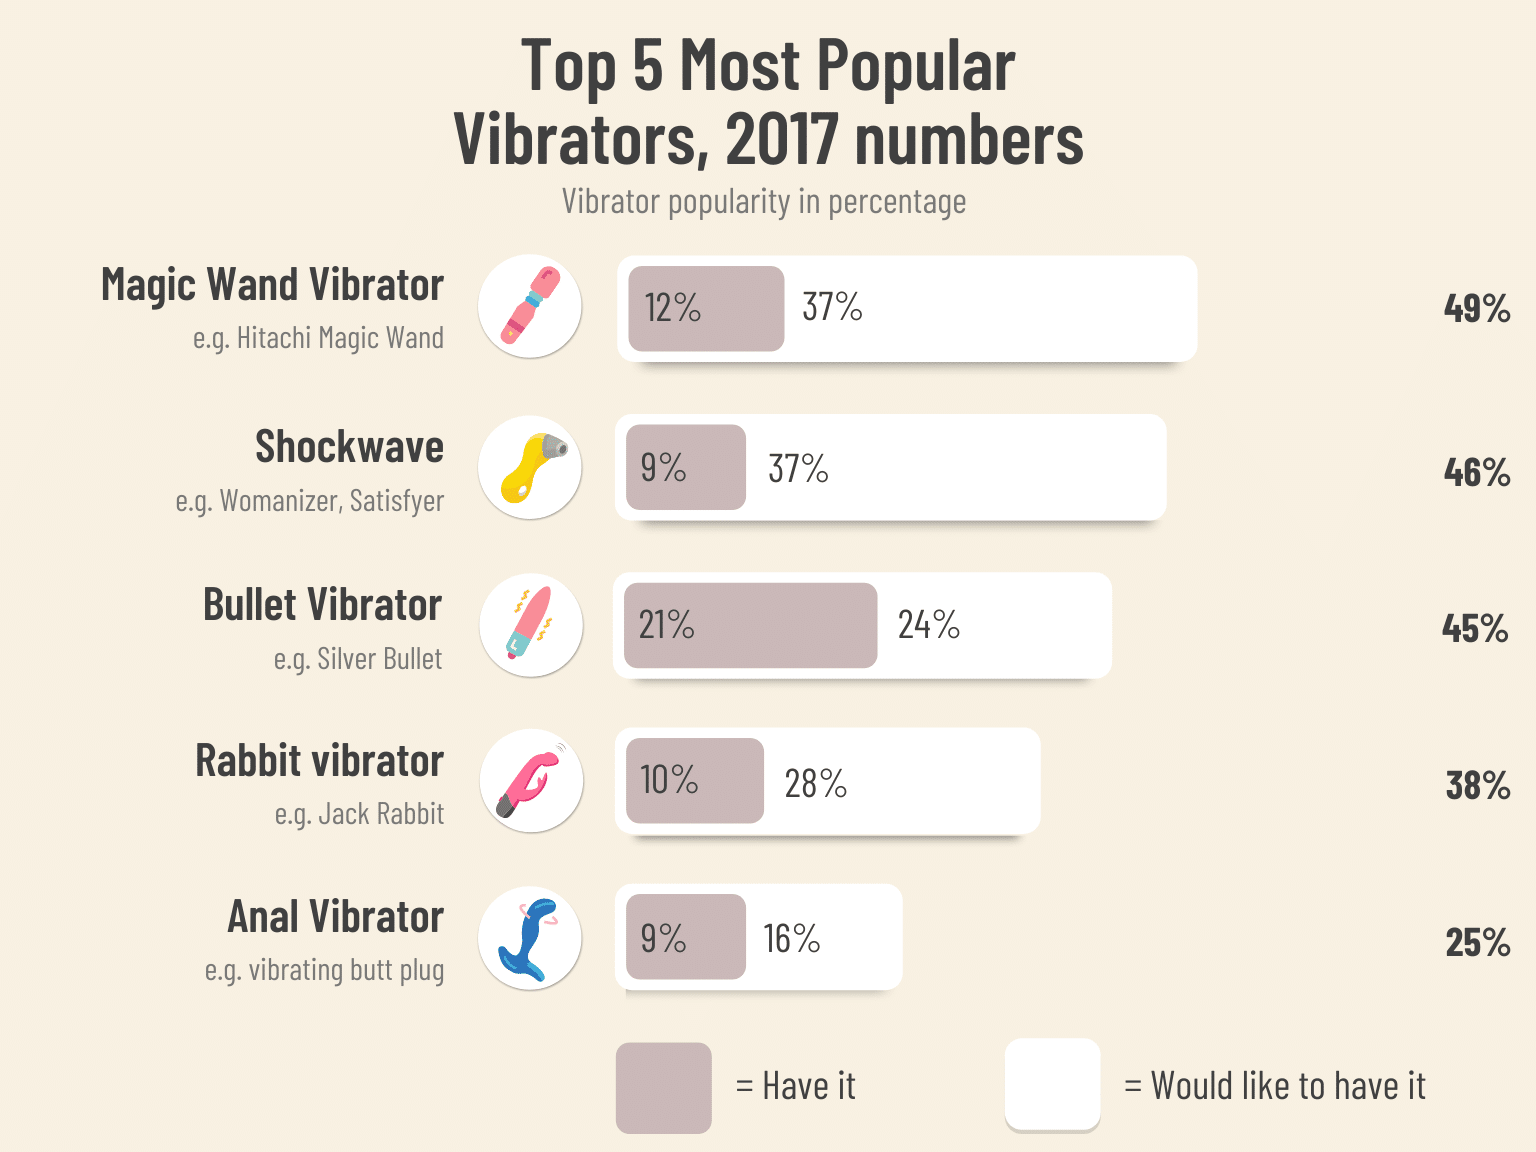 Top 5 most popular vibrators, 2017 numbers